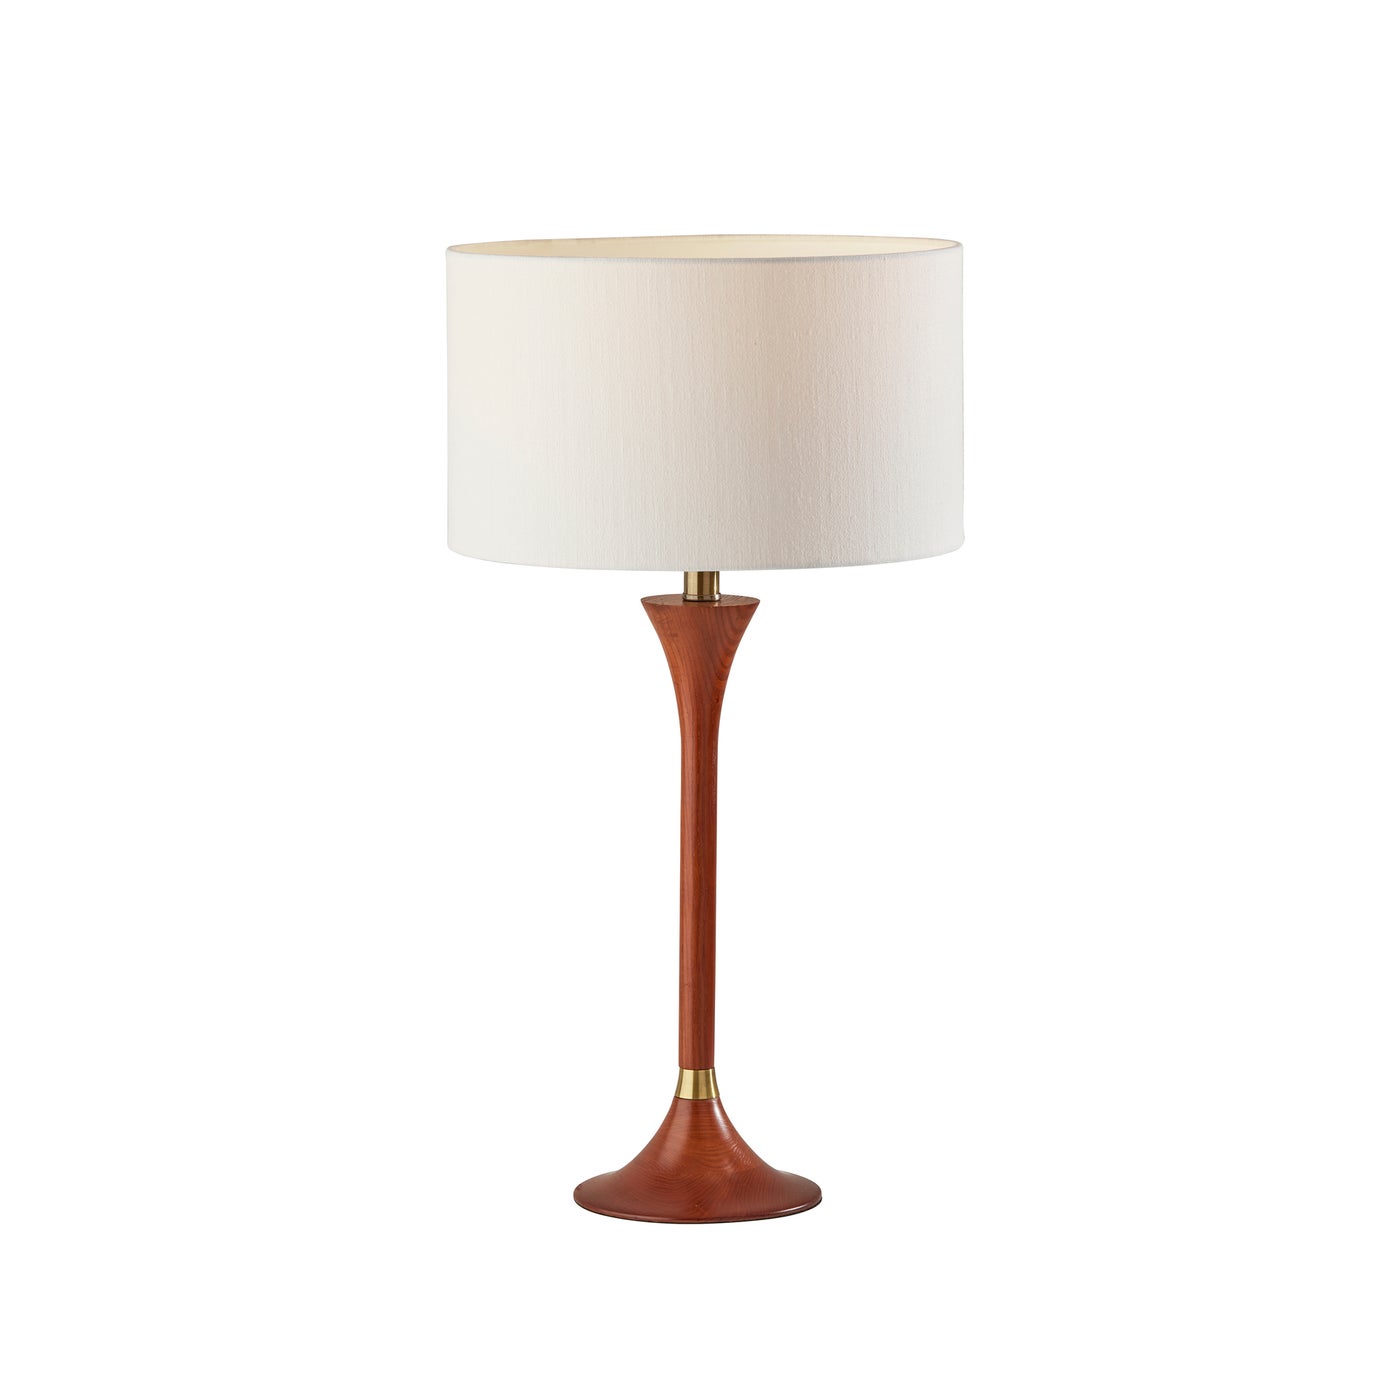 Adesso Home - 1600-15 - Table Lamp - Rebecca - Walnut Rubberwood W. Antique Brass Accent